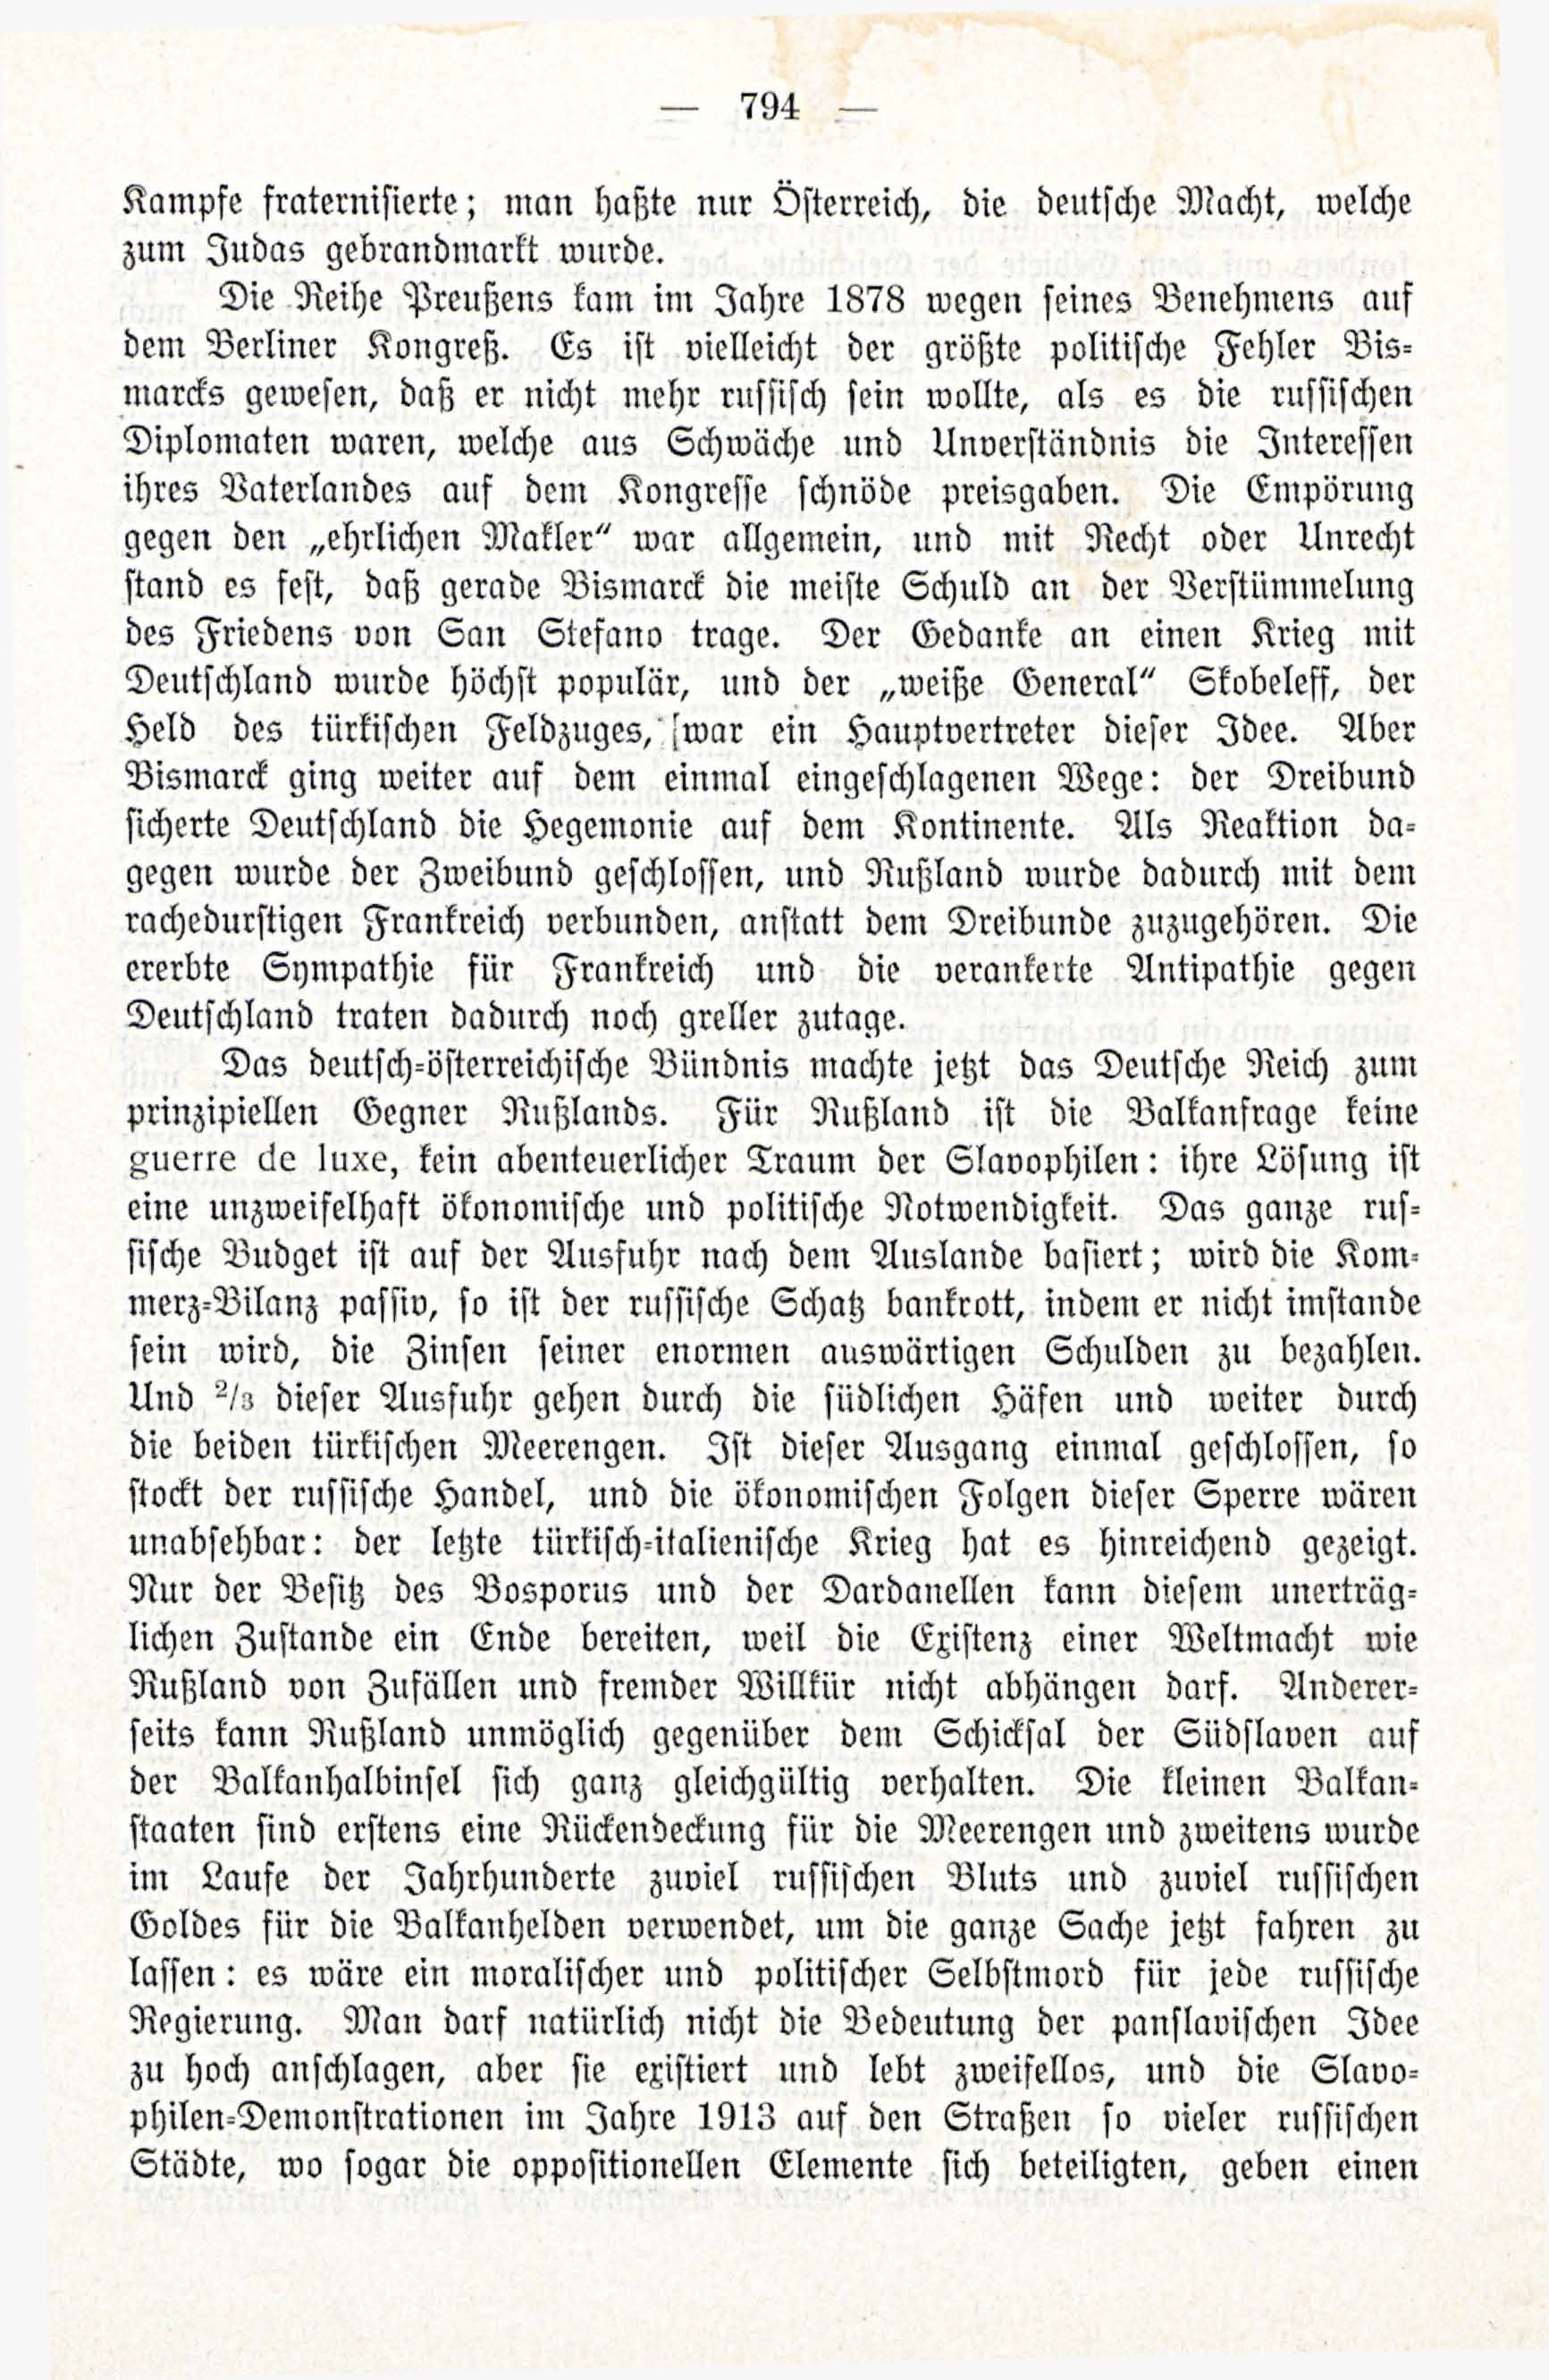 Deutsche Monatsschrift für Russland [3/12] (1914) | 10. (794) Main body of text